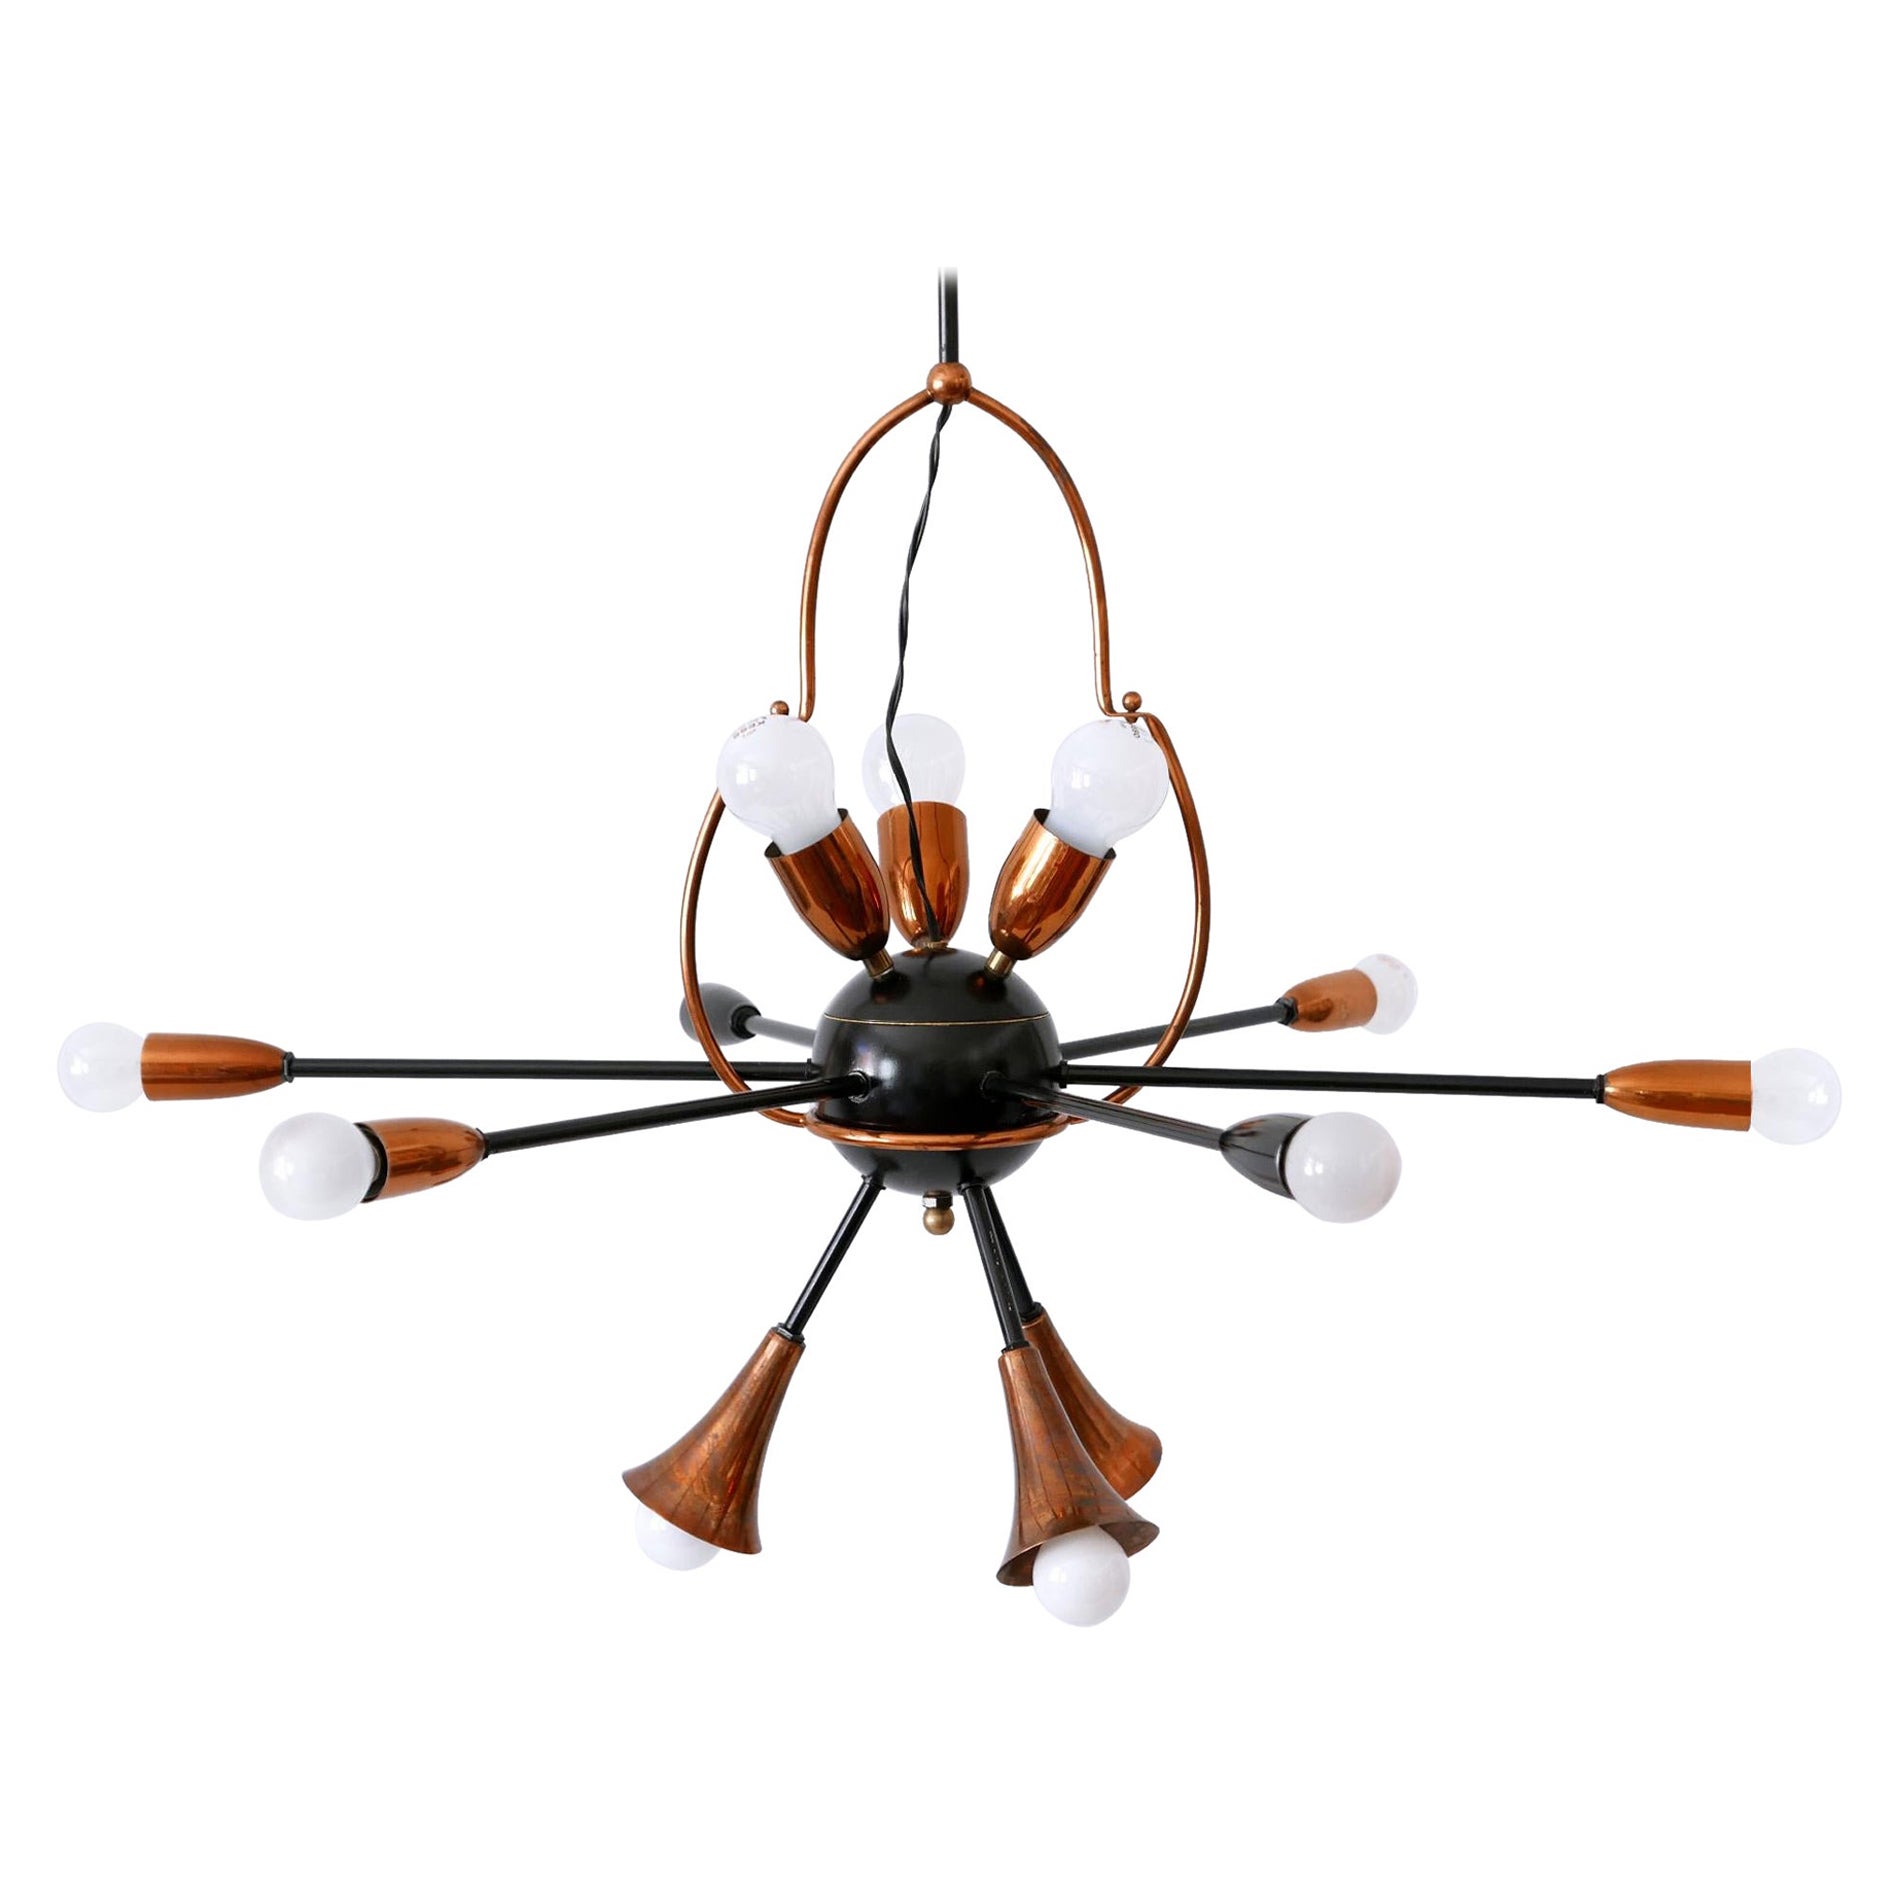 Exceptional Twelve-Flamed Sputnik Chandelier or Pendant Lamp Austria 1950s For Sale